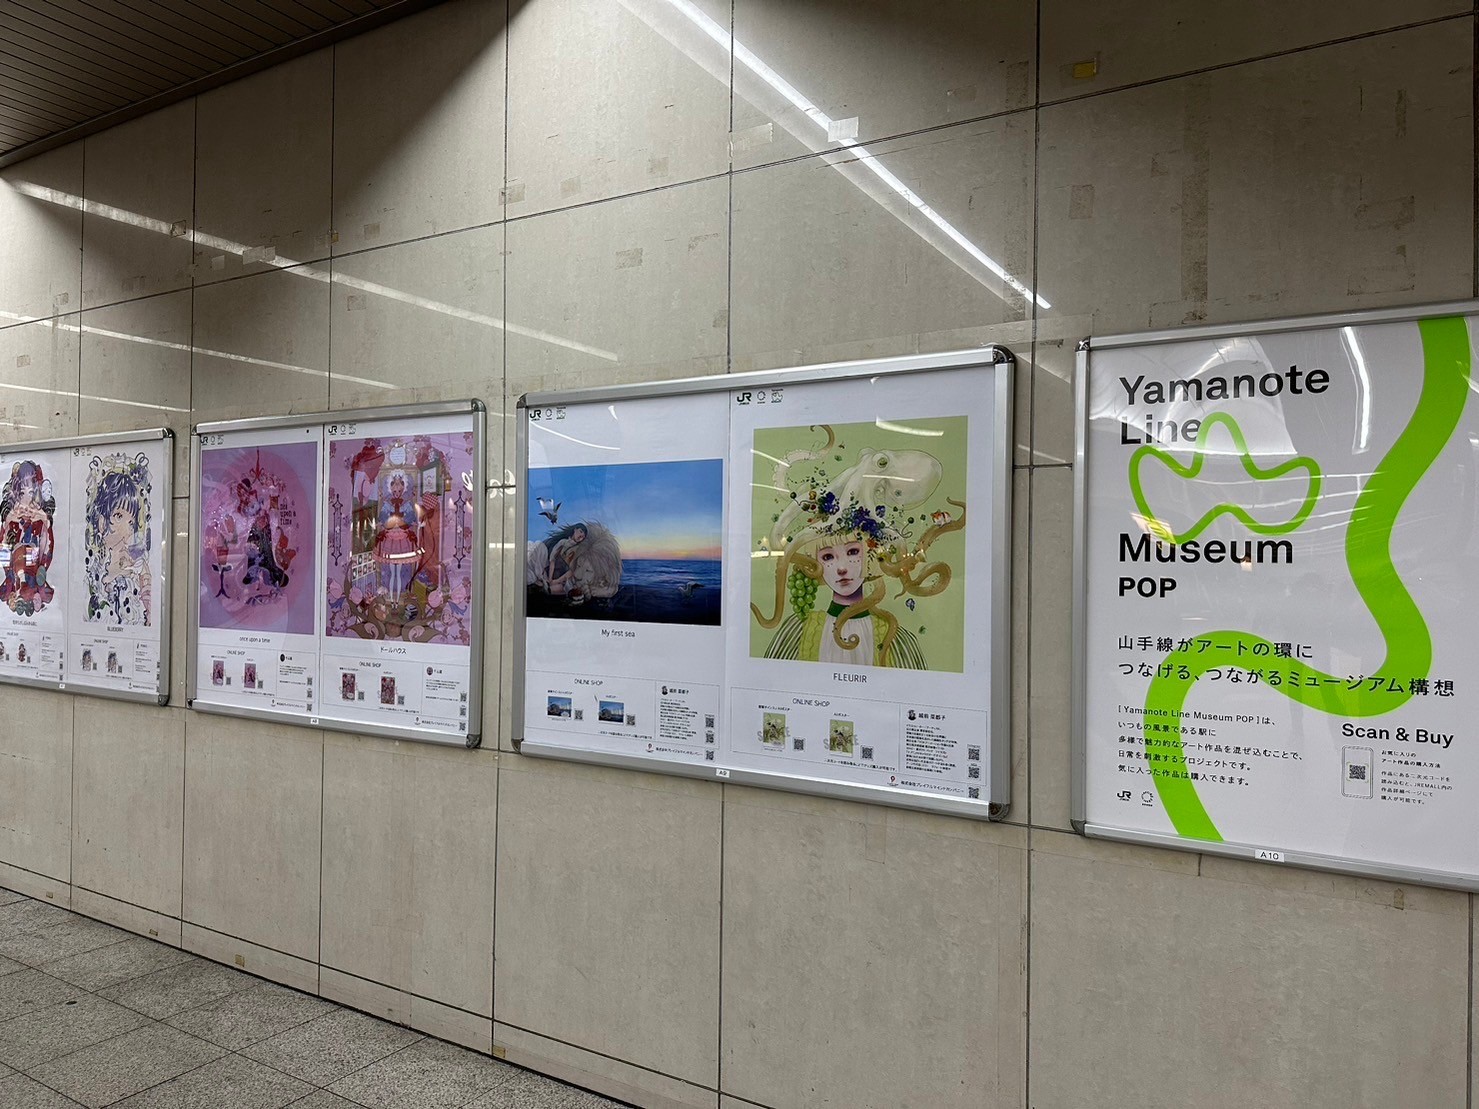 Yamanote Line Museum POPの作品の展示箇所を入れ替え